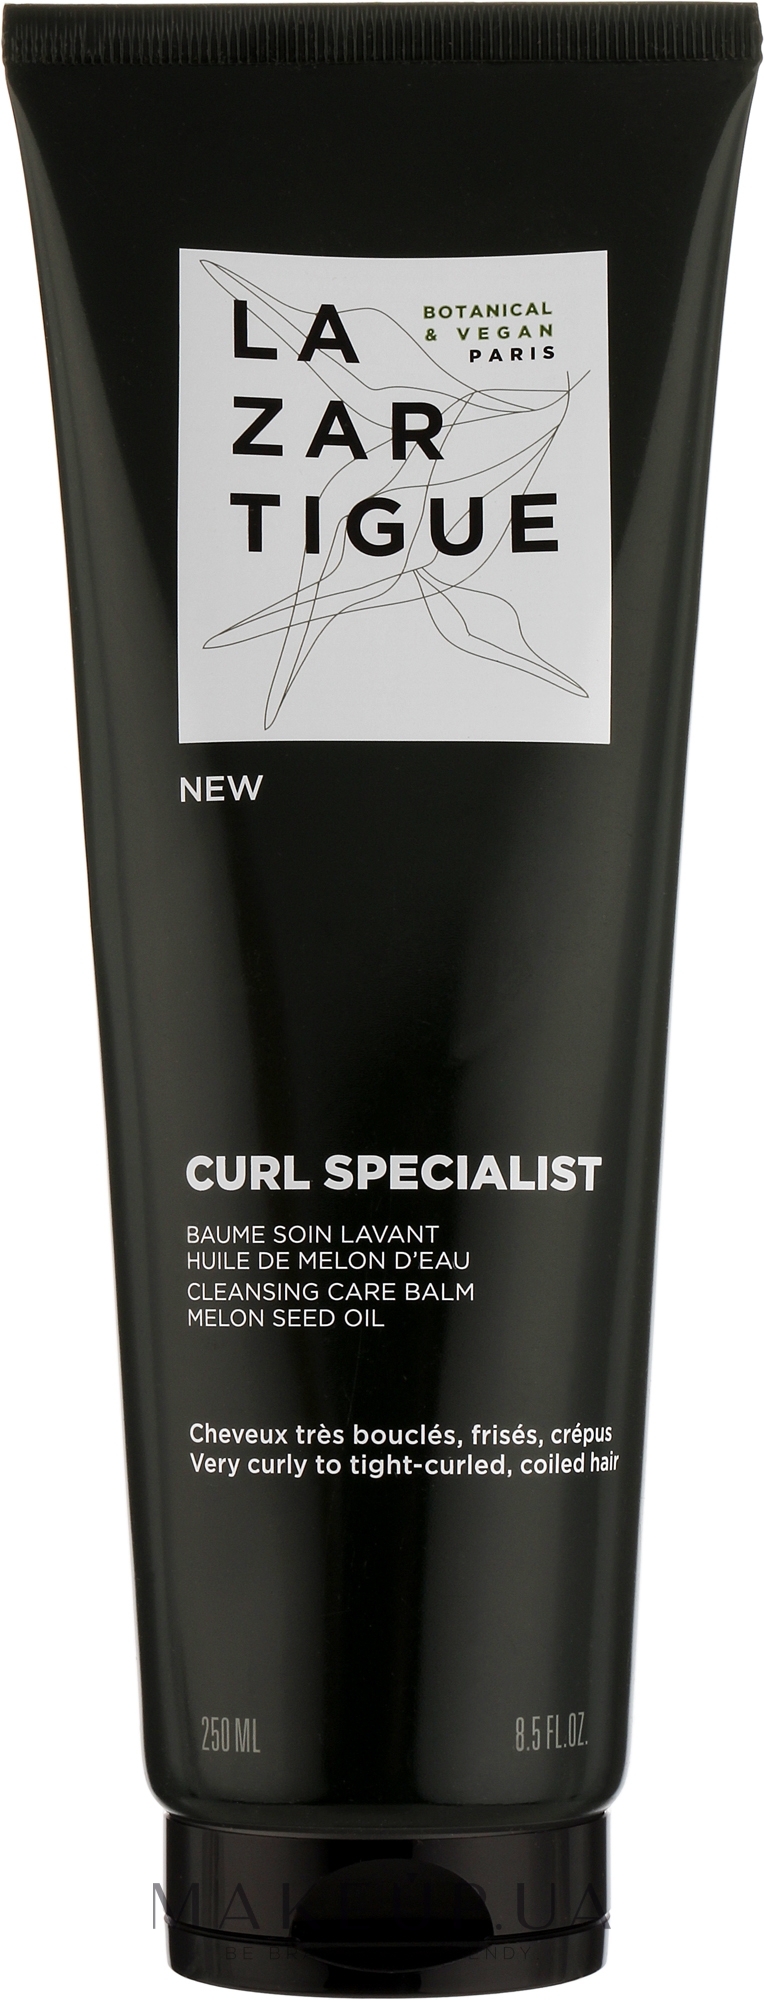 Очищающий бальзам для волос - Lazartigue Curl Specialist Cleansing Care Balm — фото 250ml